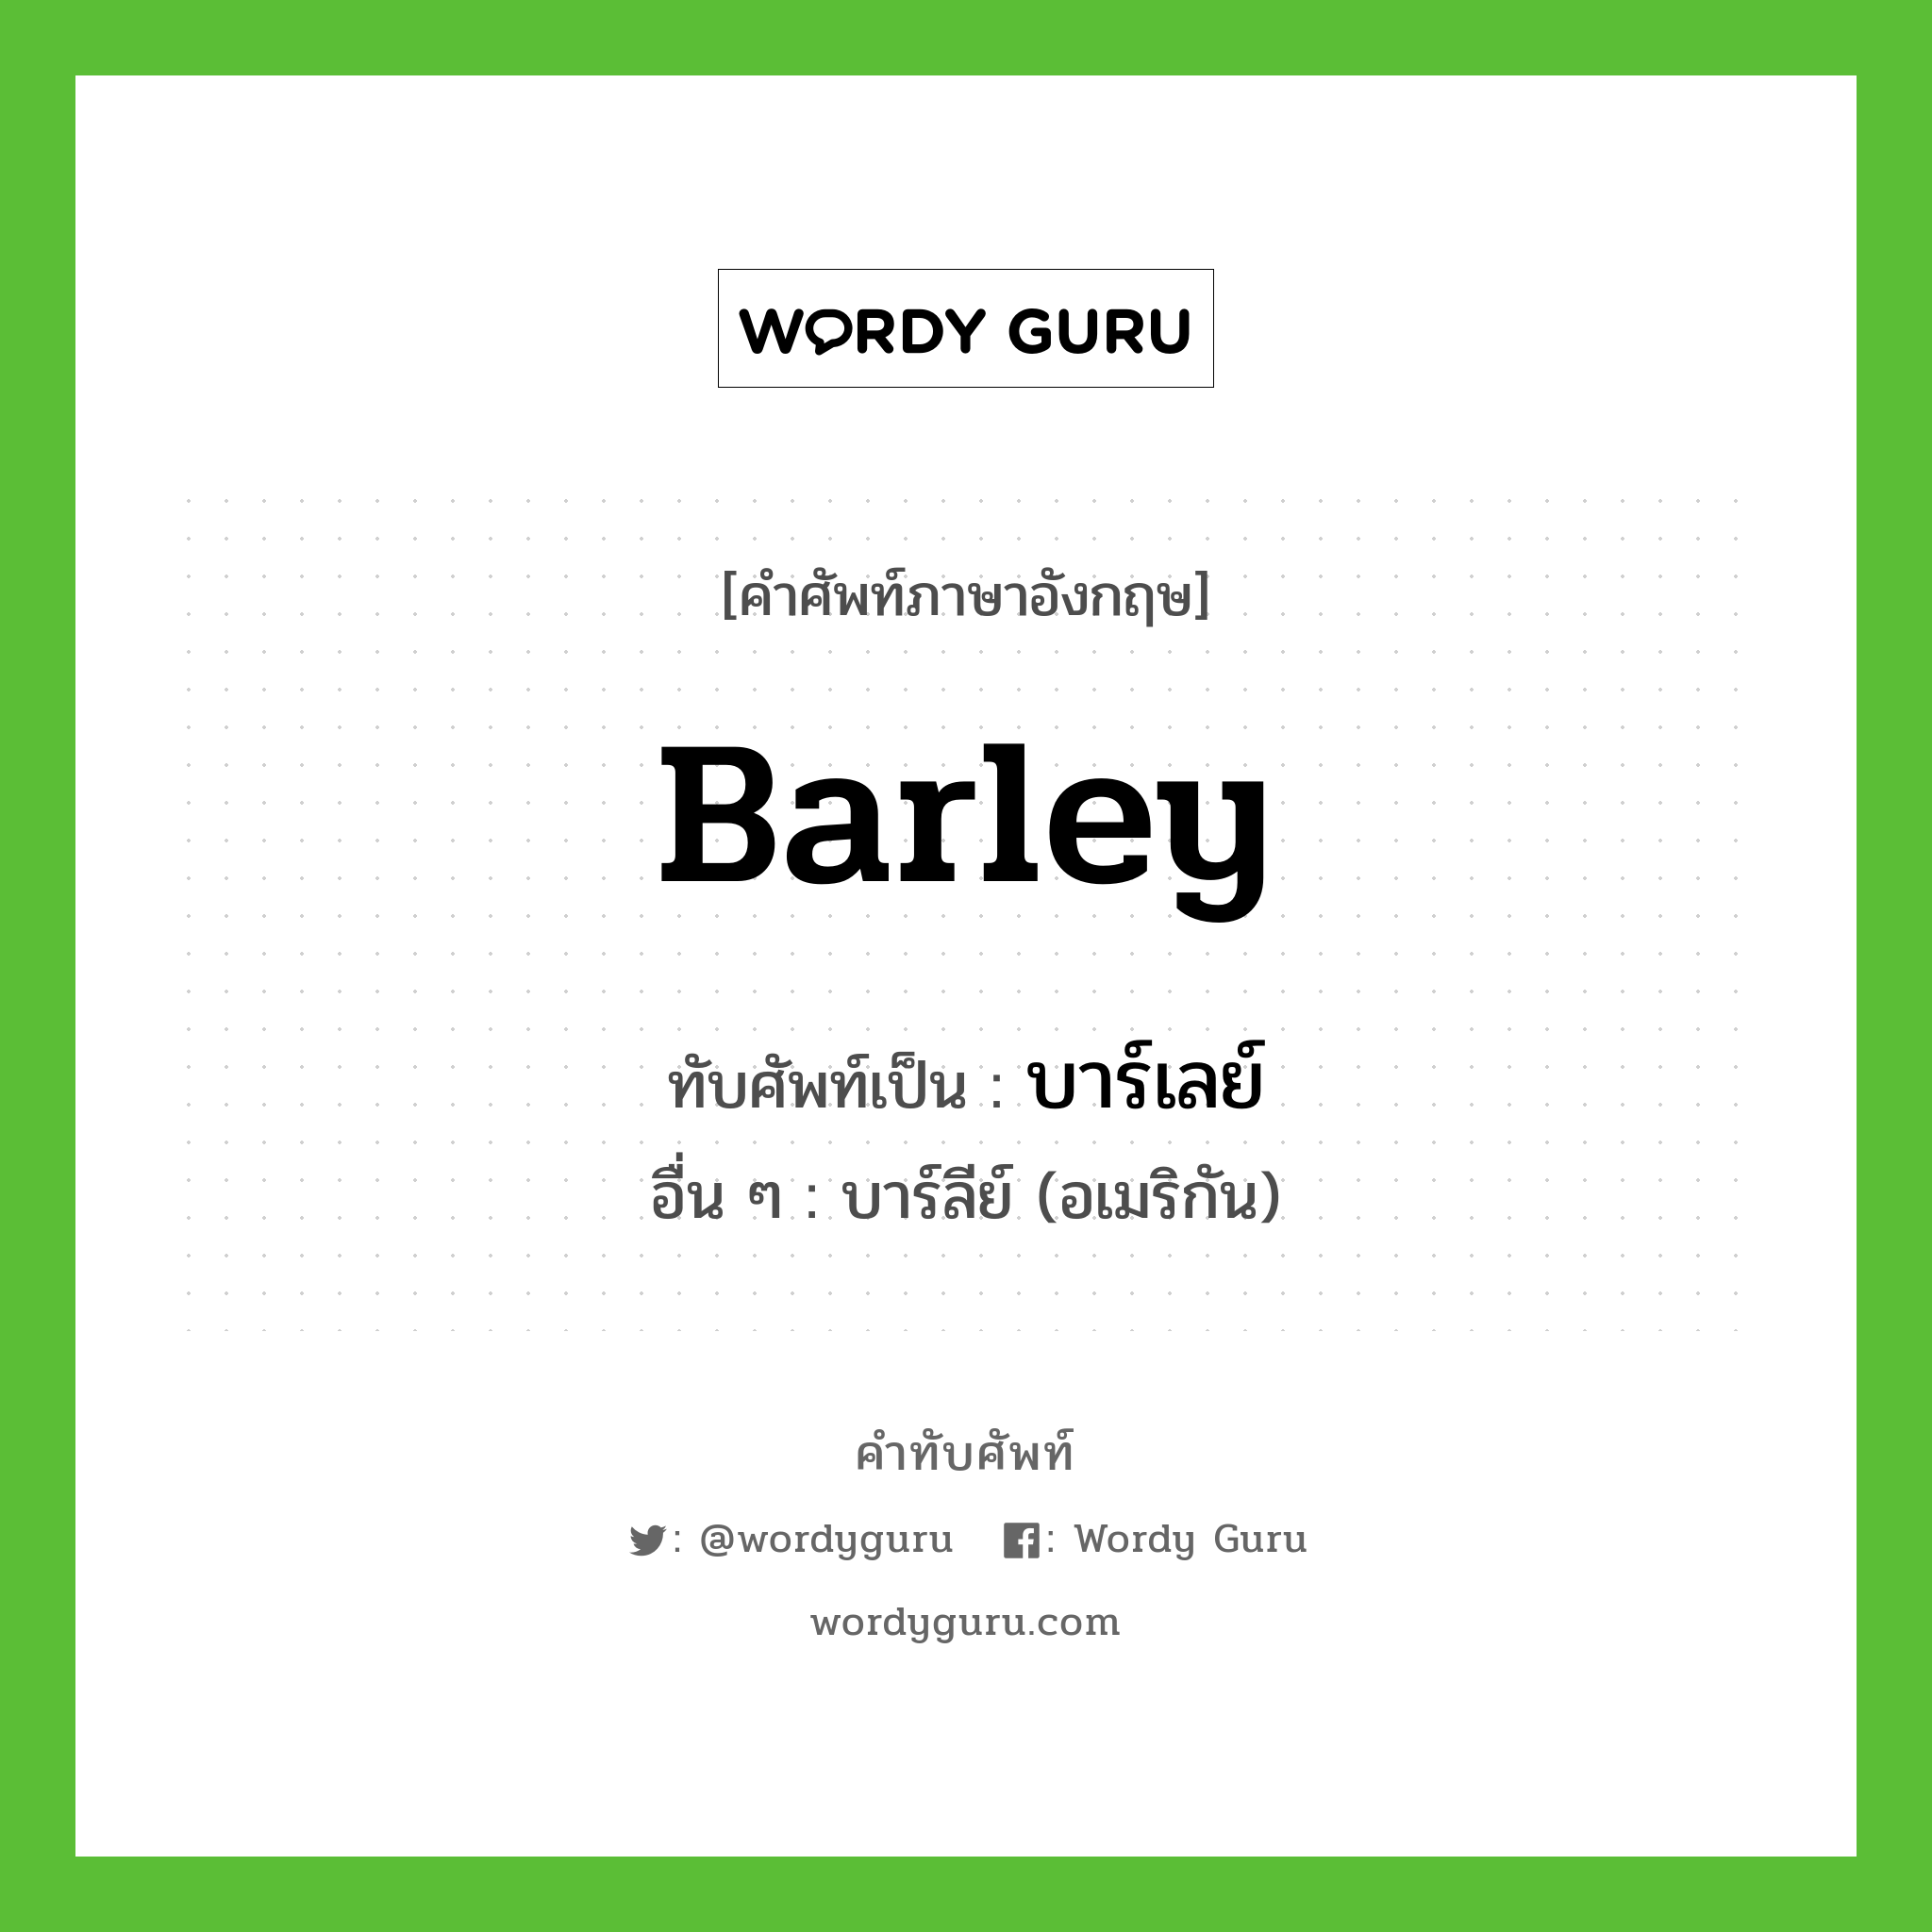 barley เขียนเป็นคำไทยว่าอะไร?, คำศัพท์ภาษาอังกฤษ barley ทับศัพท์เป็น บาร์เลย์ อื่น ๆ บาร์ลีย์ (อเมริกัน)